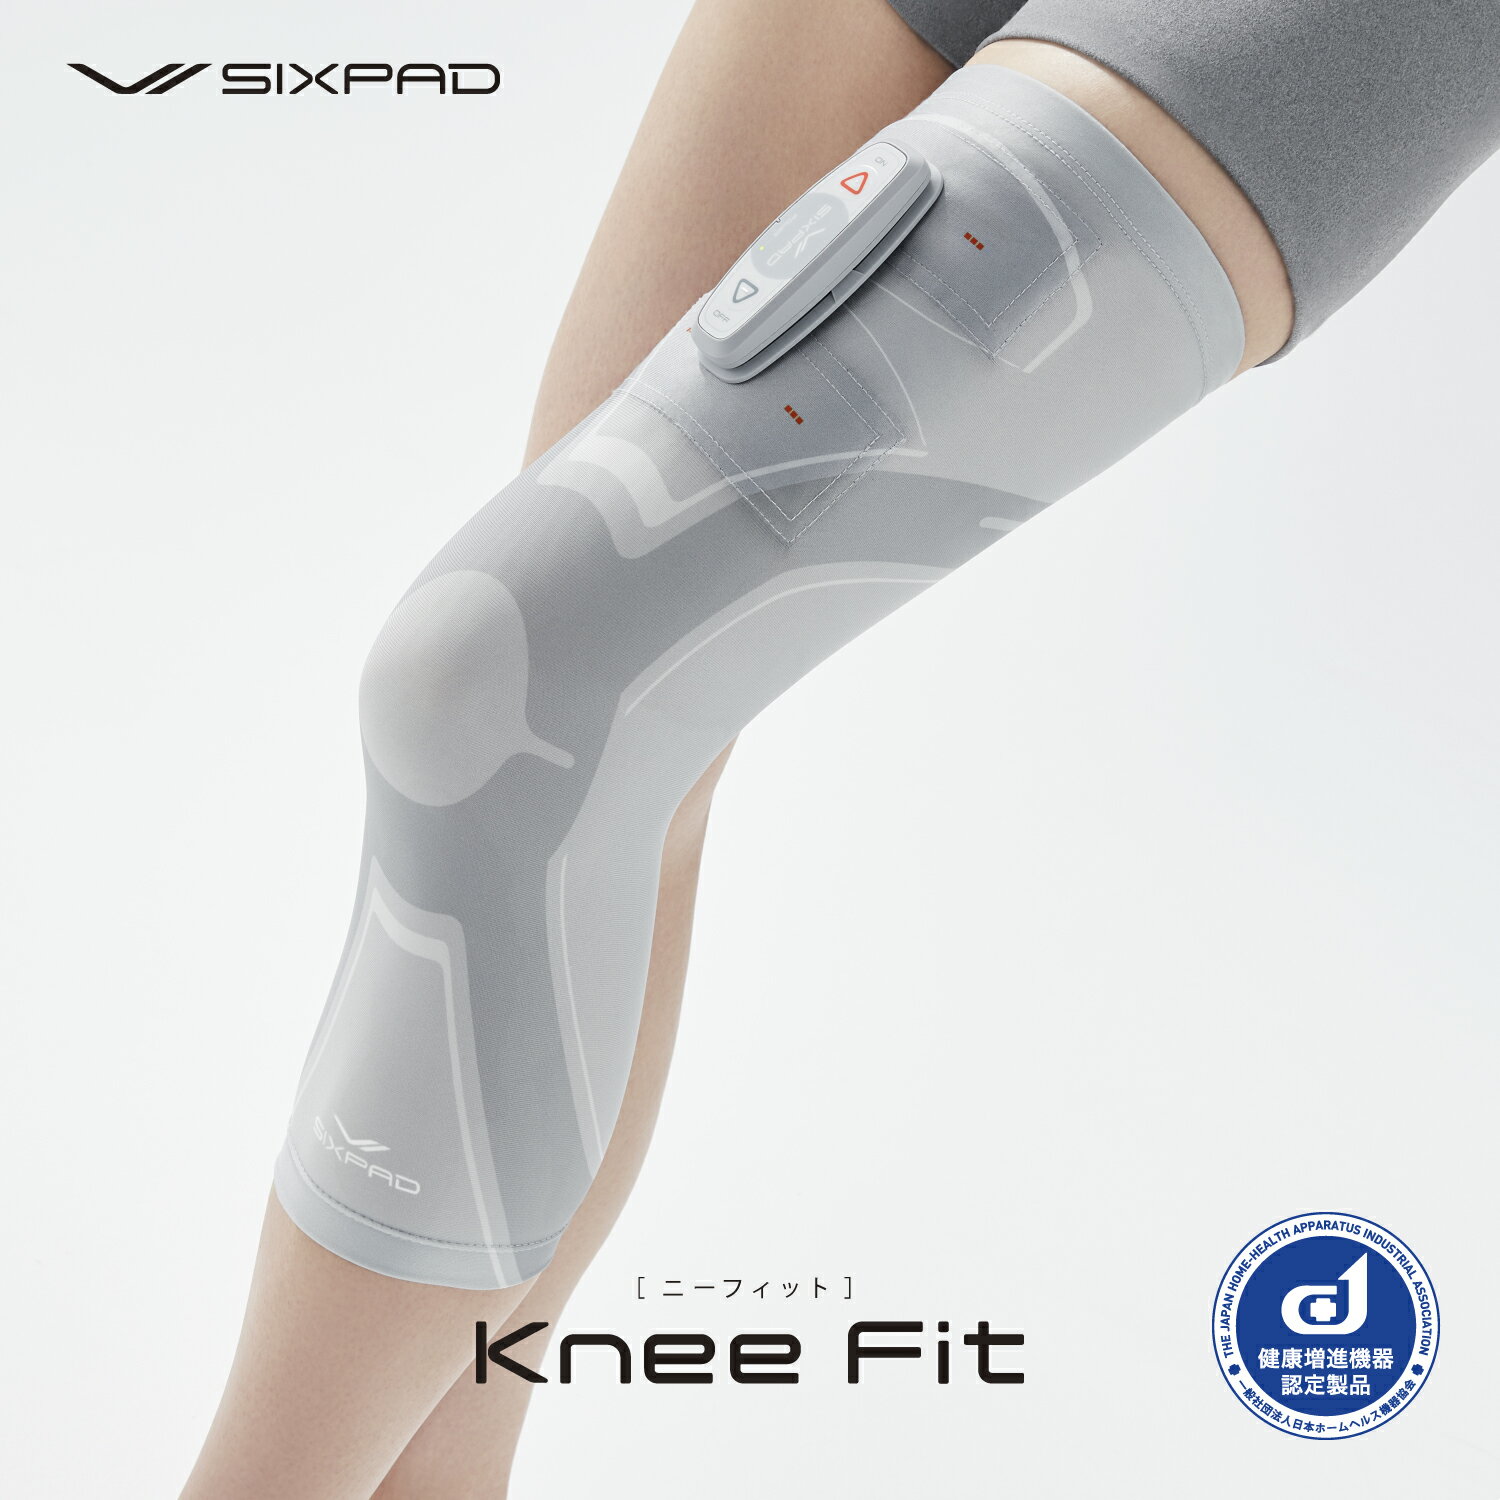 【ラッピング対応可能】SIXPAD Knee Fit S シックスパッド ニーフィット Sサイズ SE-AY-00A-S 4573176154762 専用コントローラセット MTG正規品